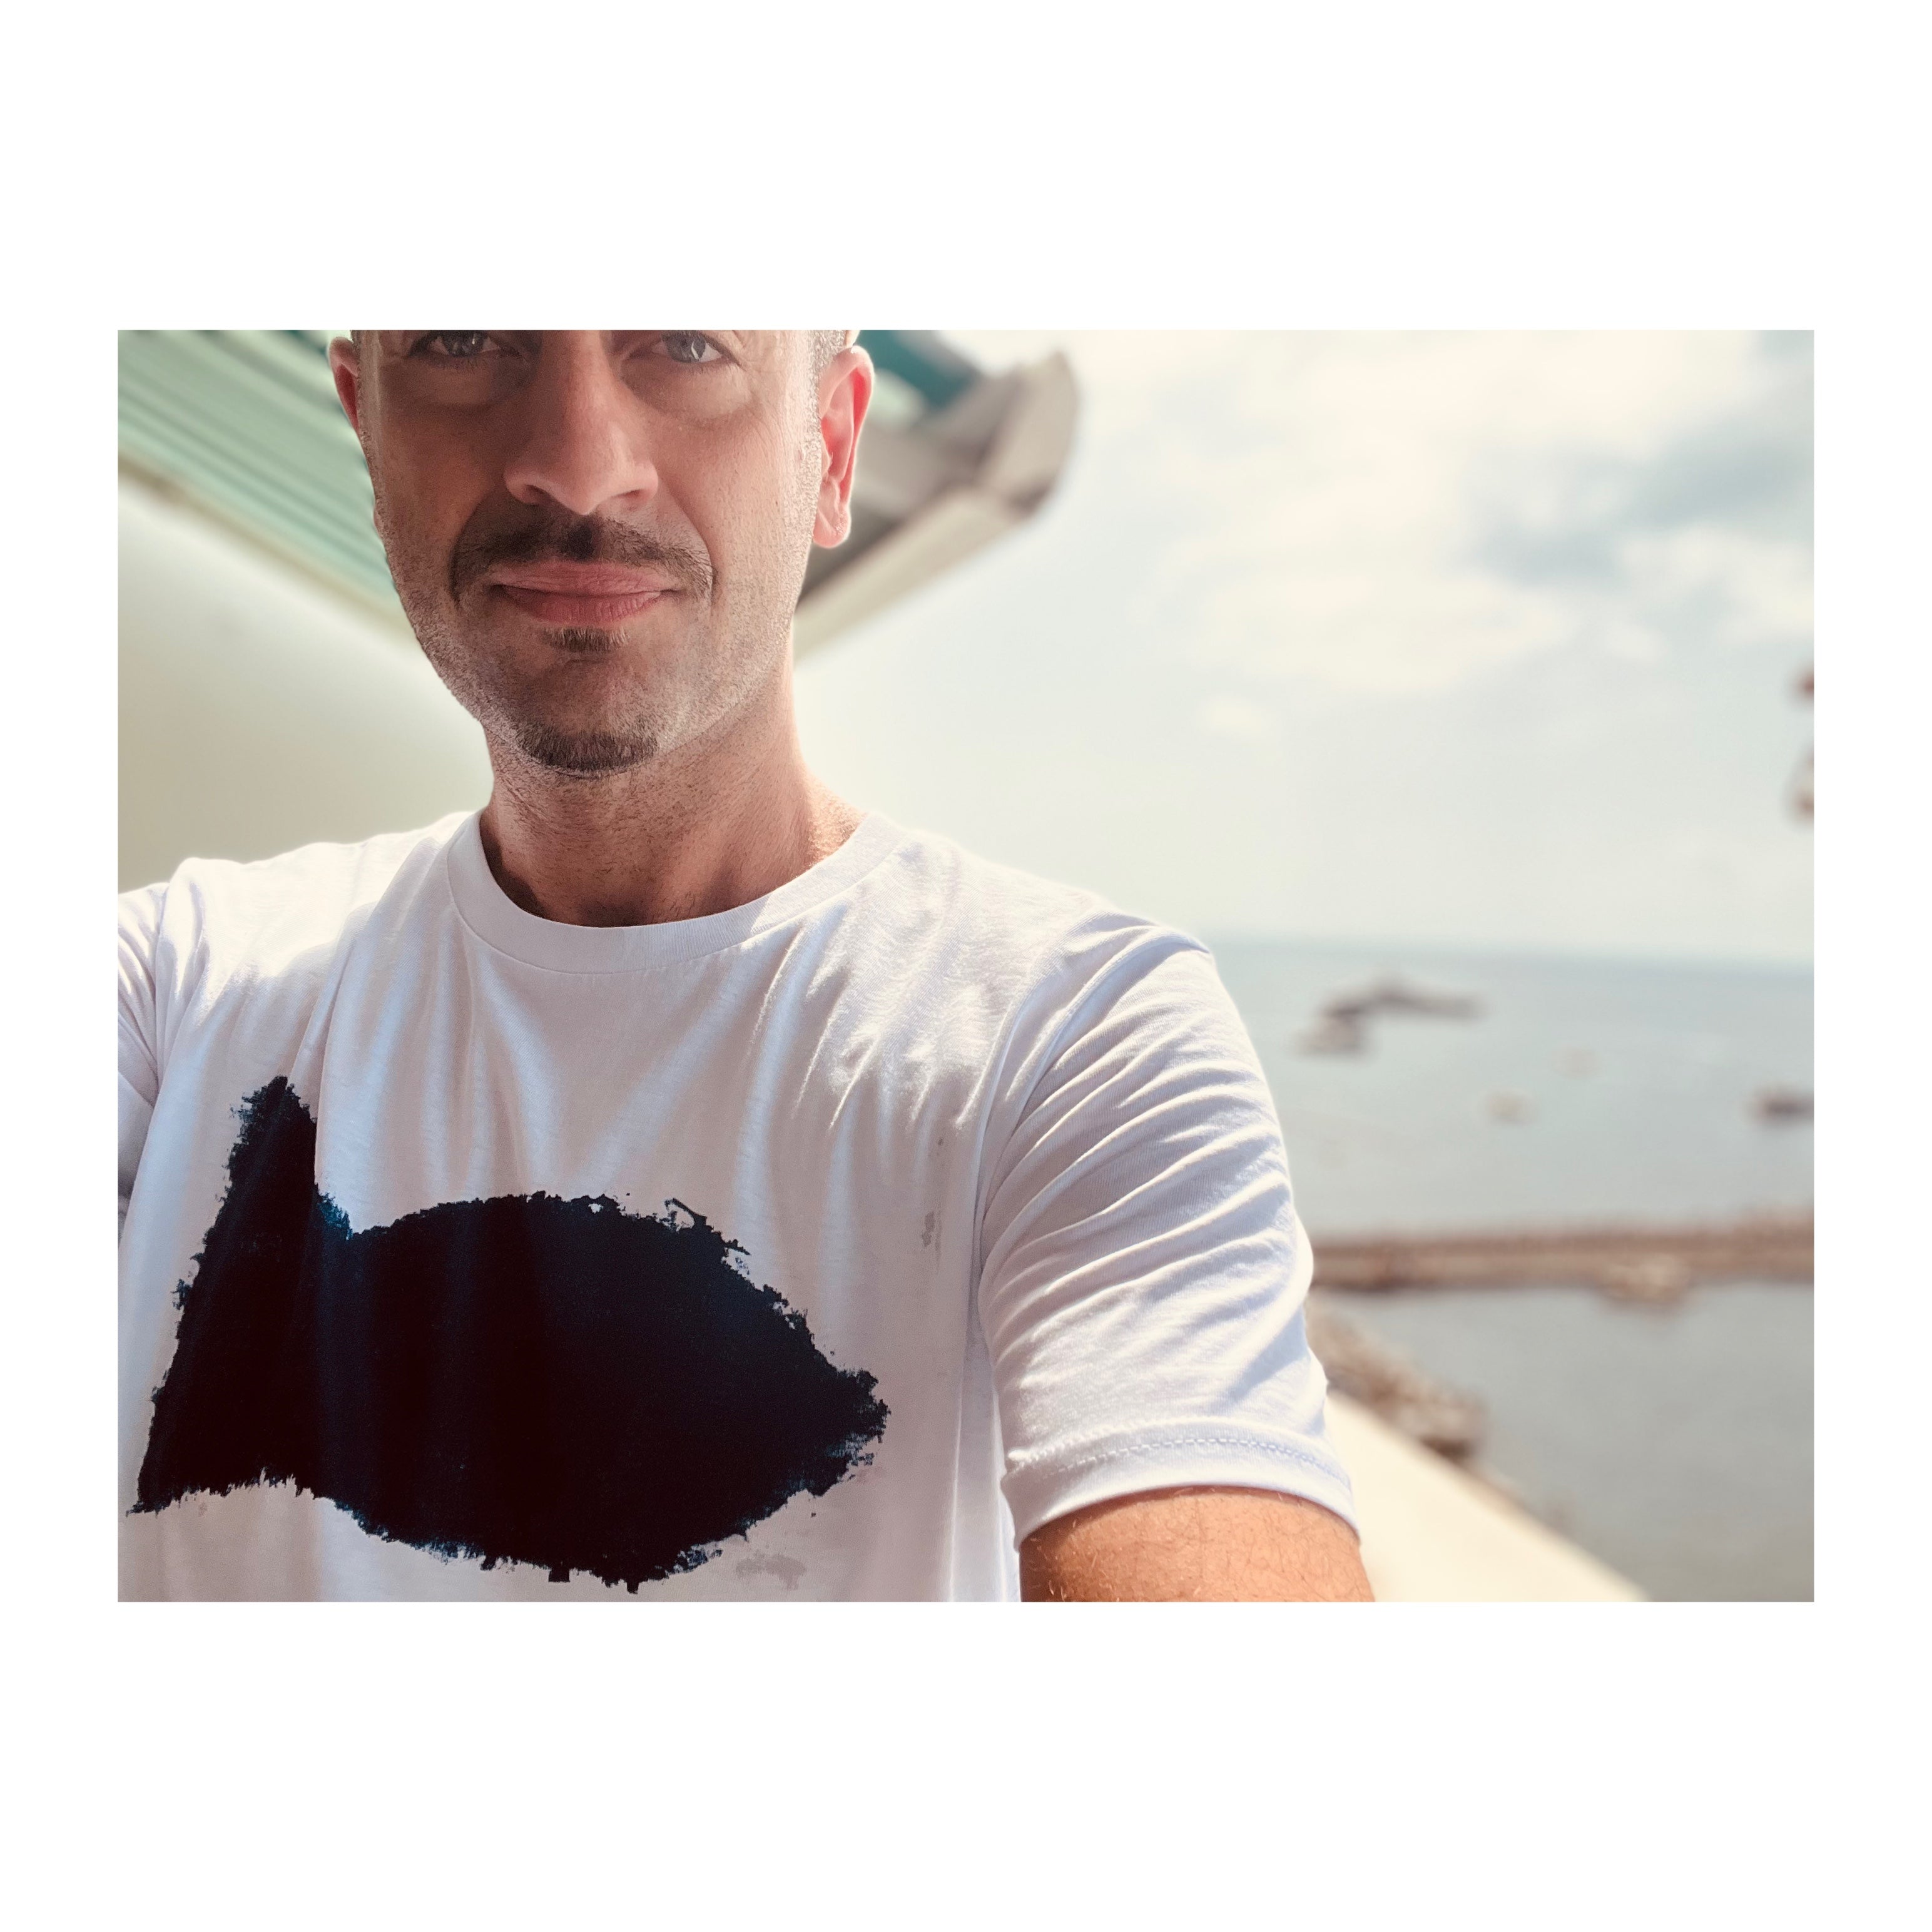 Copia del The Amalfi coast  "Pescione" t-shirt - white version - JP Amalfi